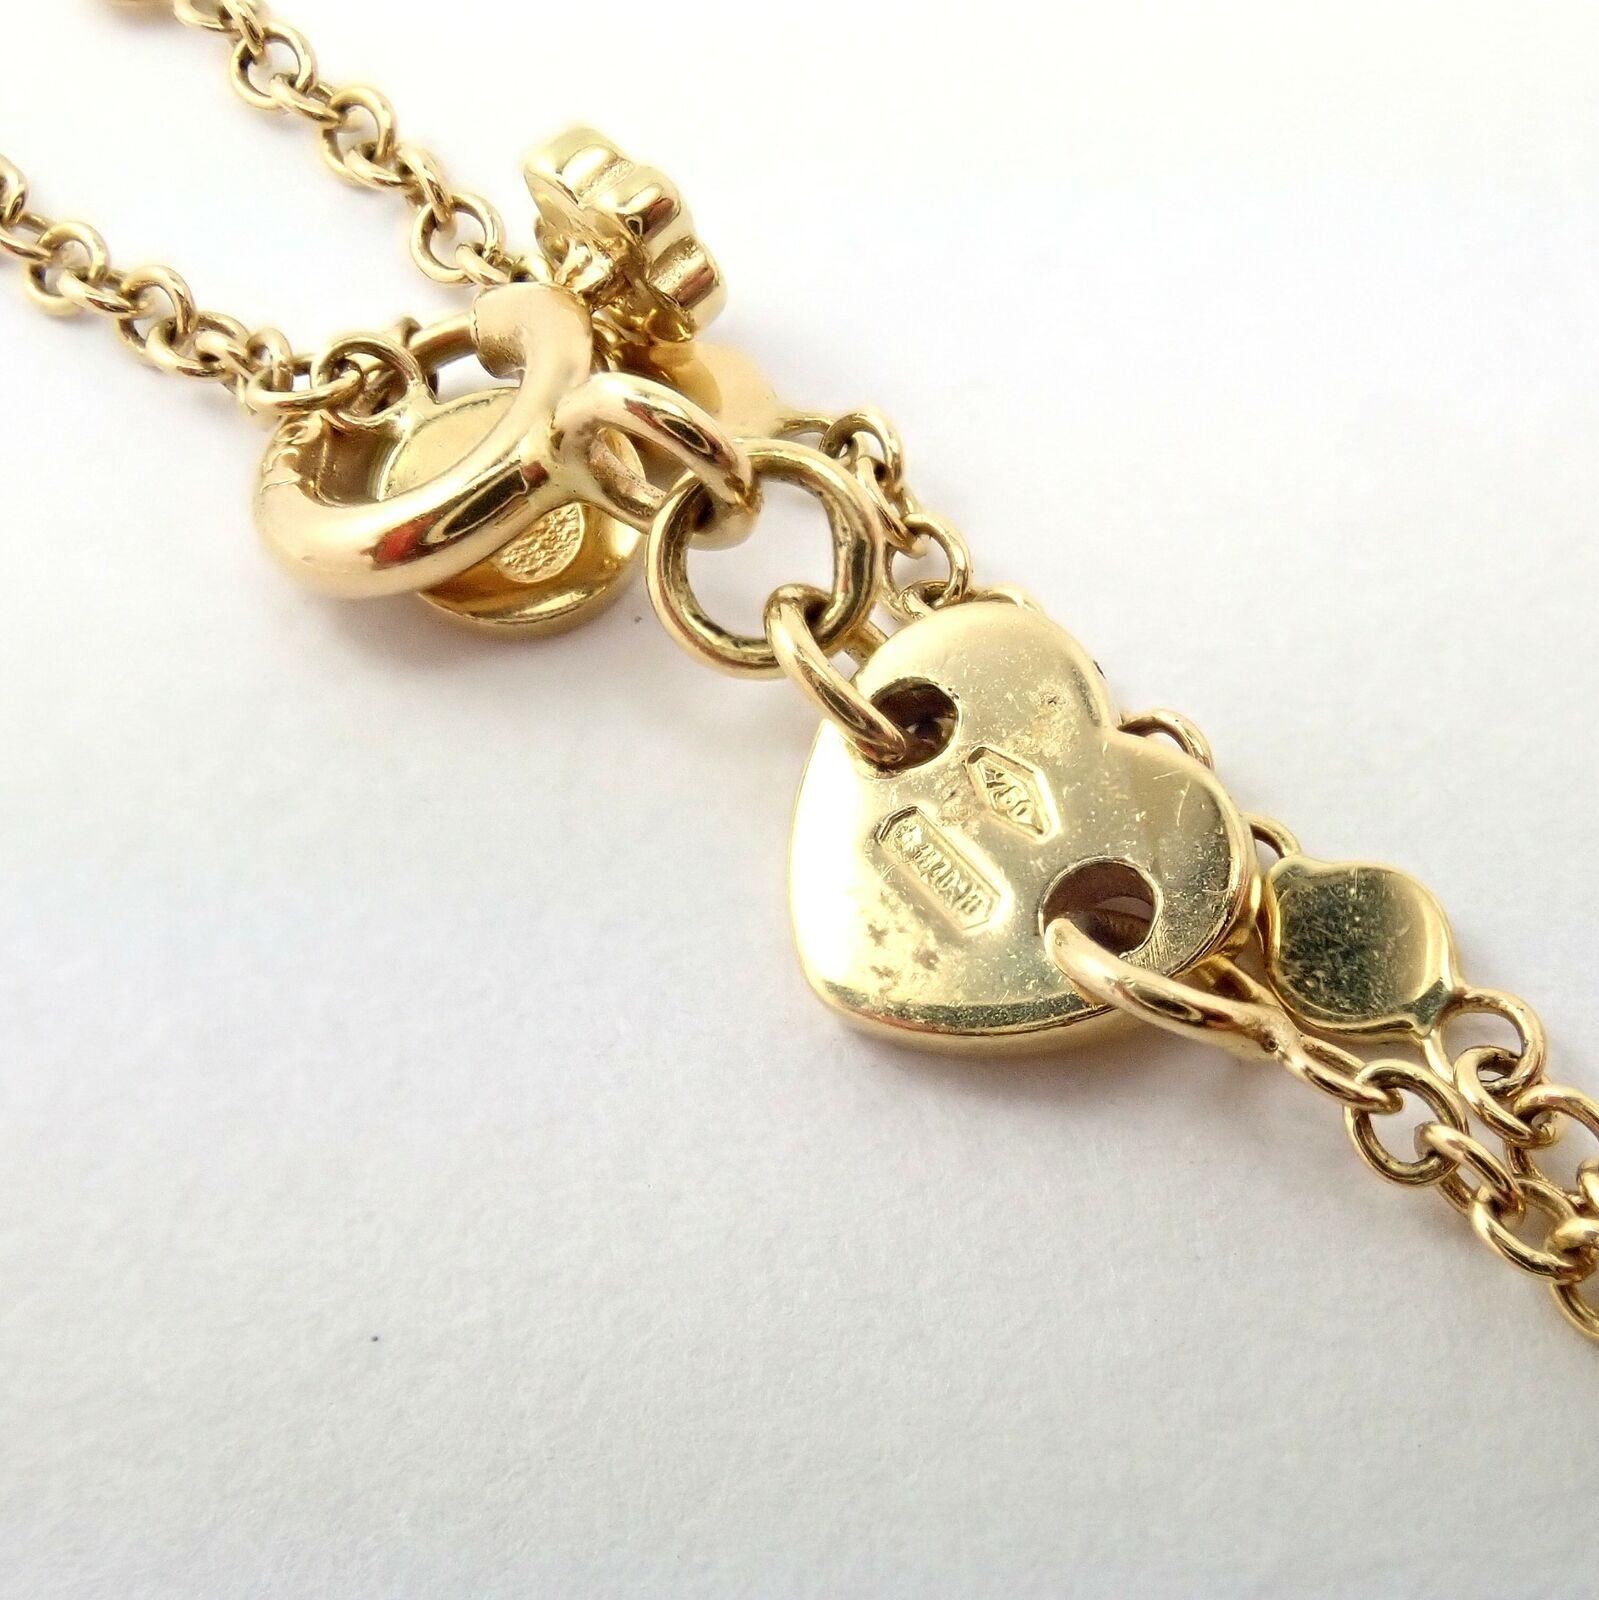 Brilliant Cut Pasquale Bruni Profondo Amore Diamond Yellow Gold Pendant Necklace For Sale